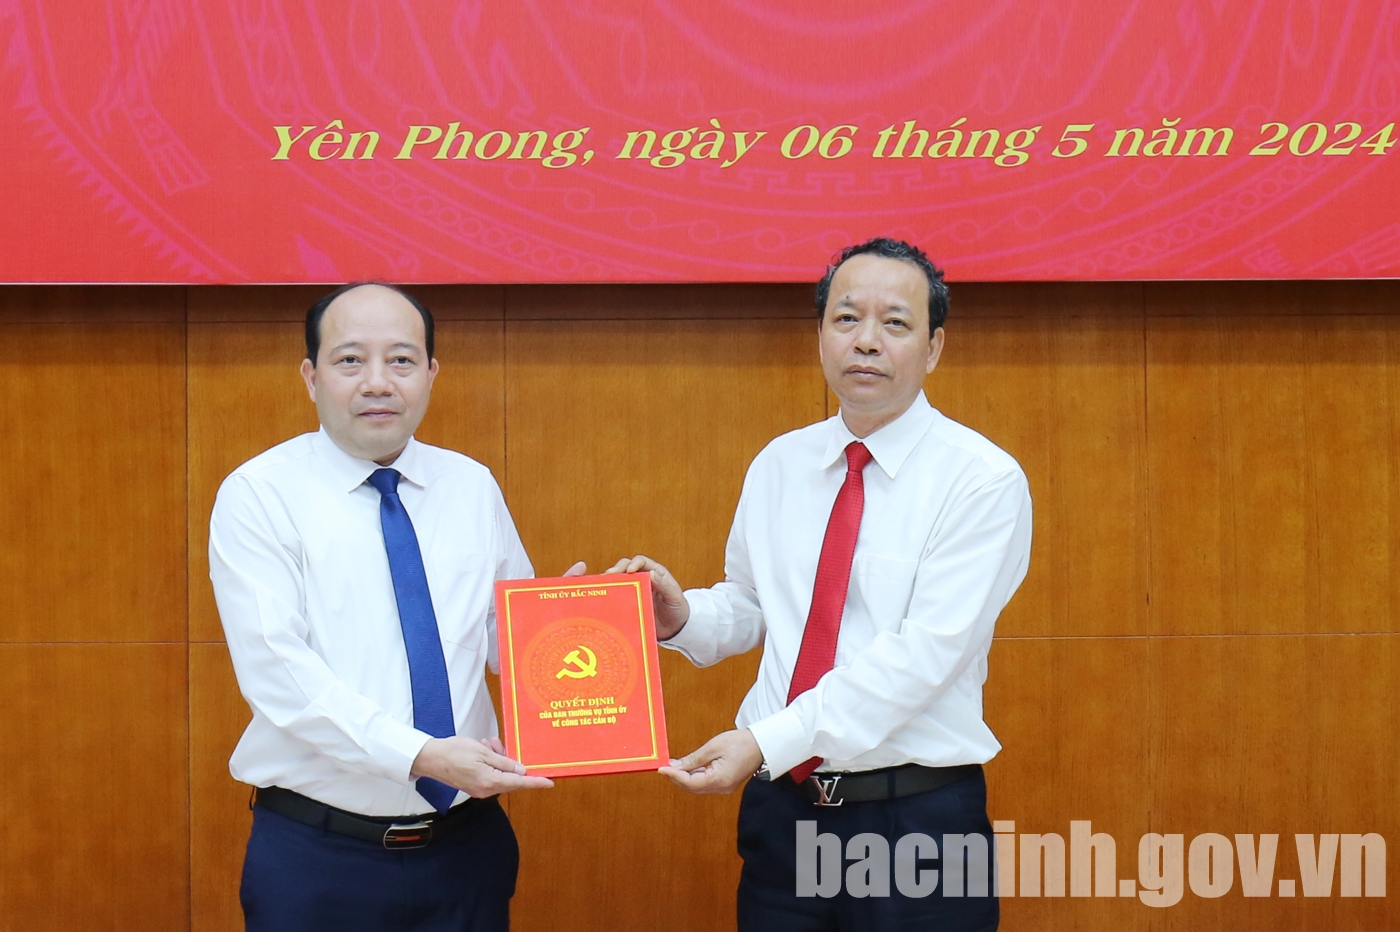 Bắc Ninh: Chủ tịch UBND thành phố Từ Sơn Hoàng Bá Huy được điều động làm Bí thư Huyện ủy Yên Phong- Ảnh 1.